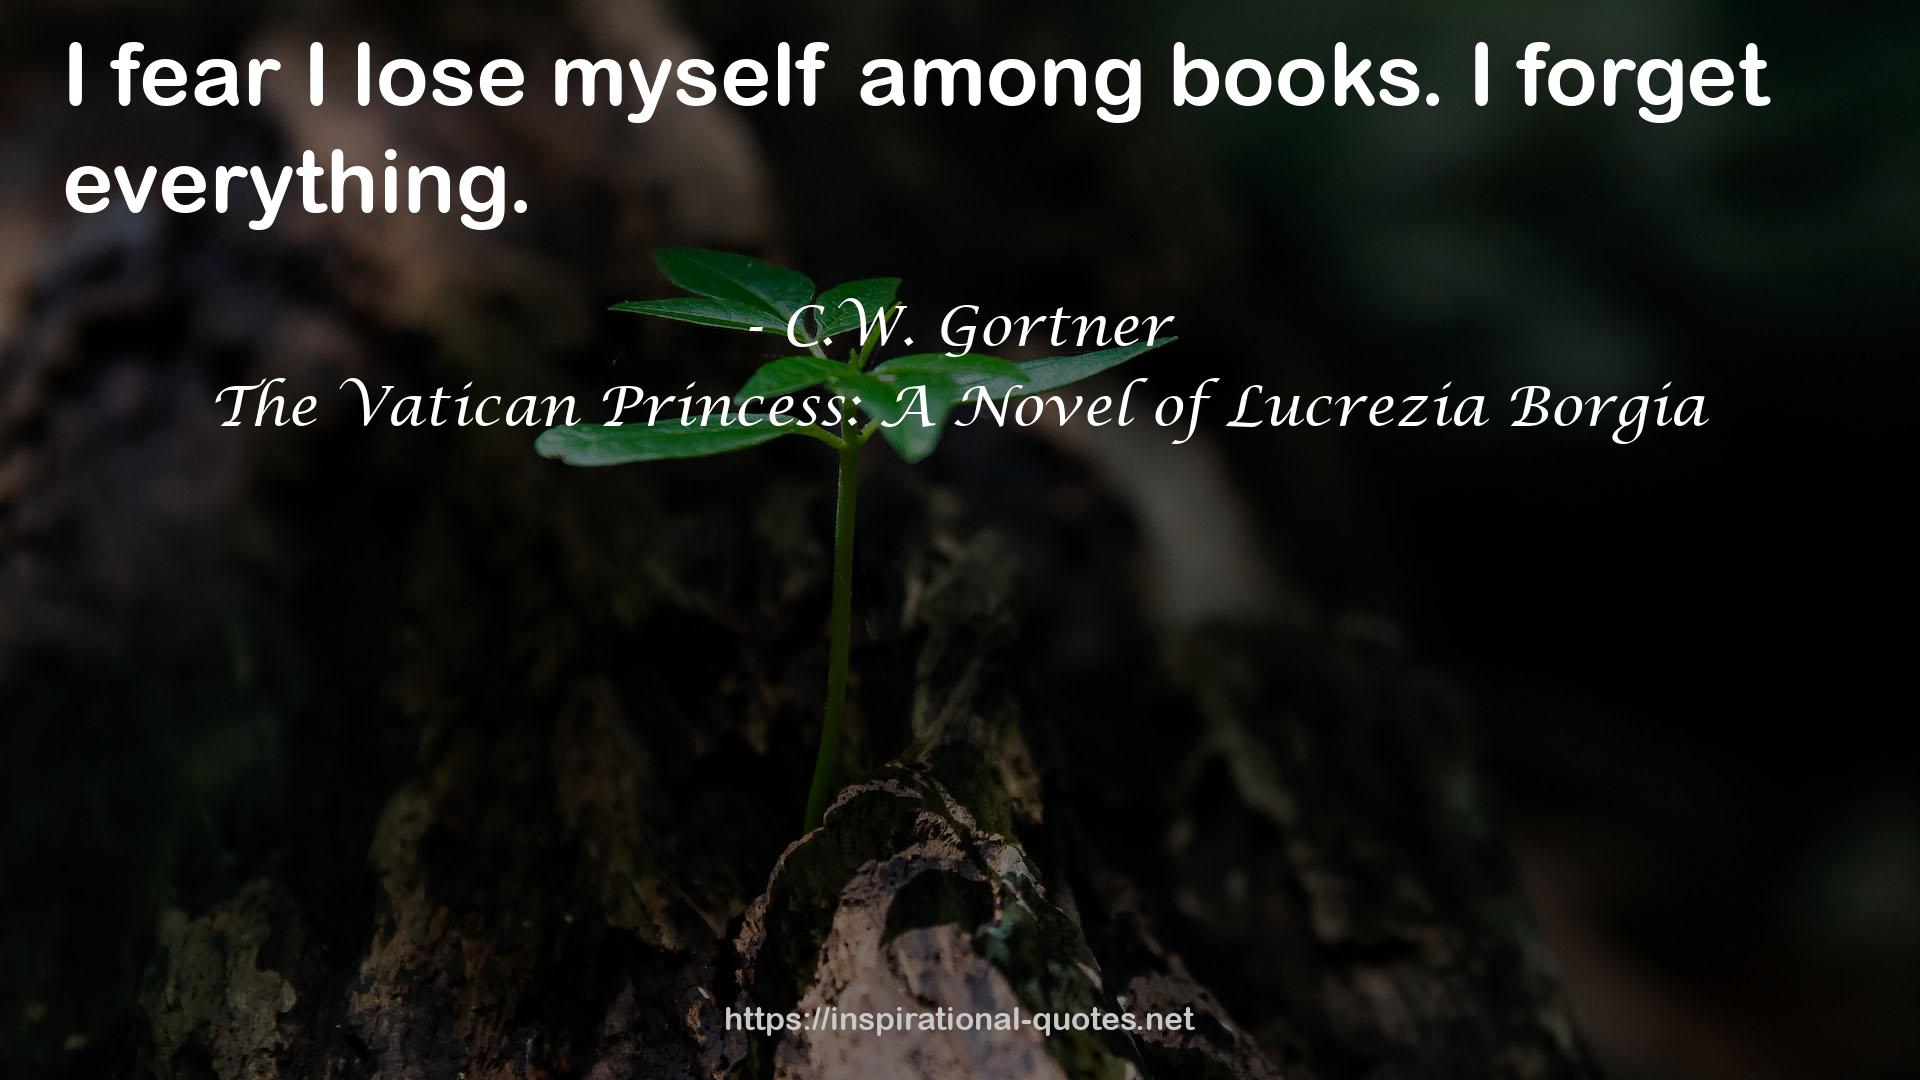 The Vatican Princess: A Novel of Lucrezia Borgia QUOTES